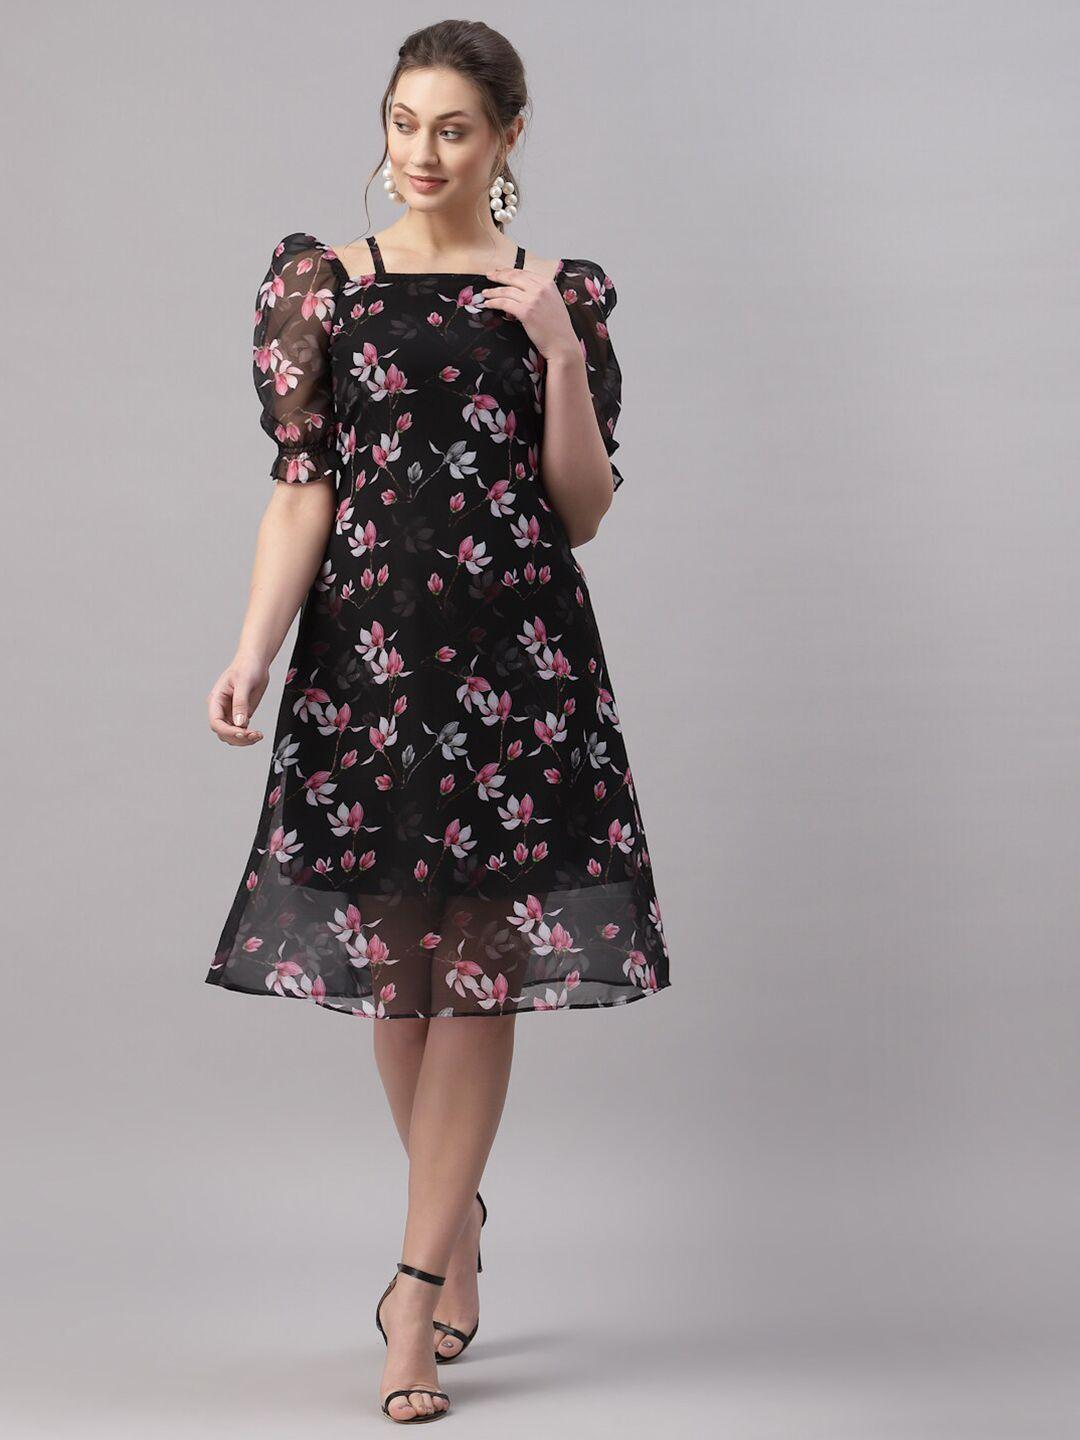 selvia black floral printed puff sleeves georgette fit & flare dress